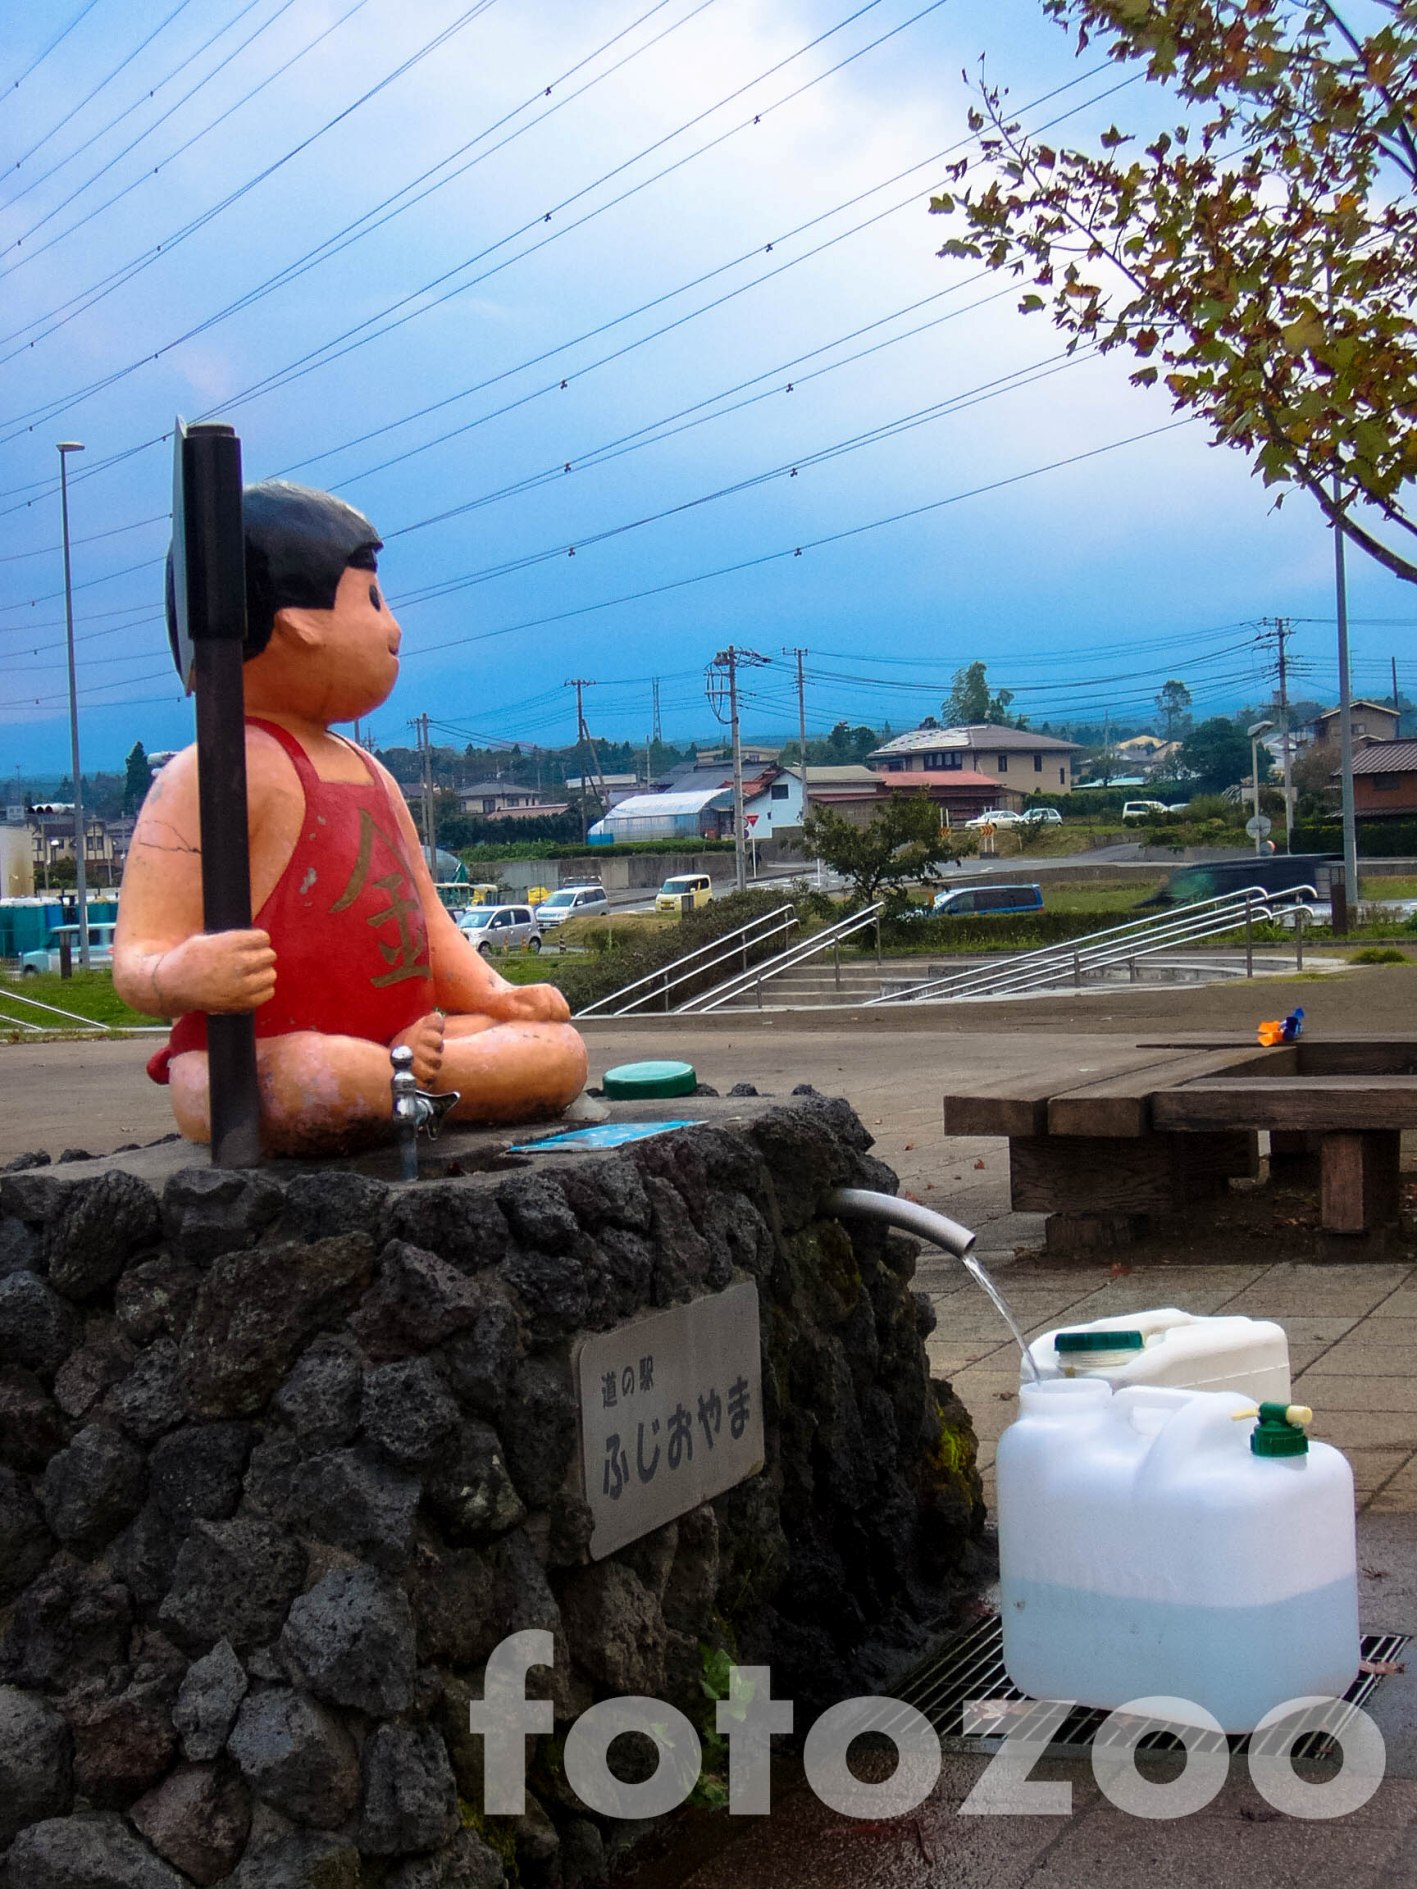 Fuji víz folyik a csőből. A drága ásványvíz itt ingyen iható, sokan kannával érkeznek.